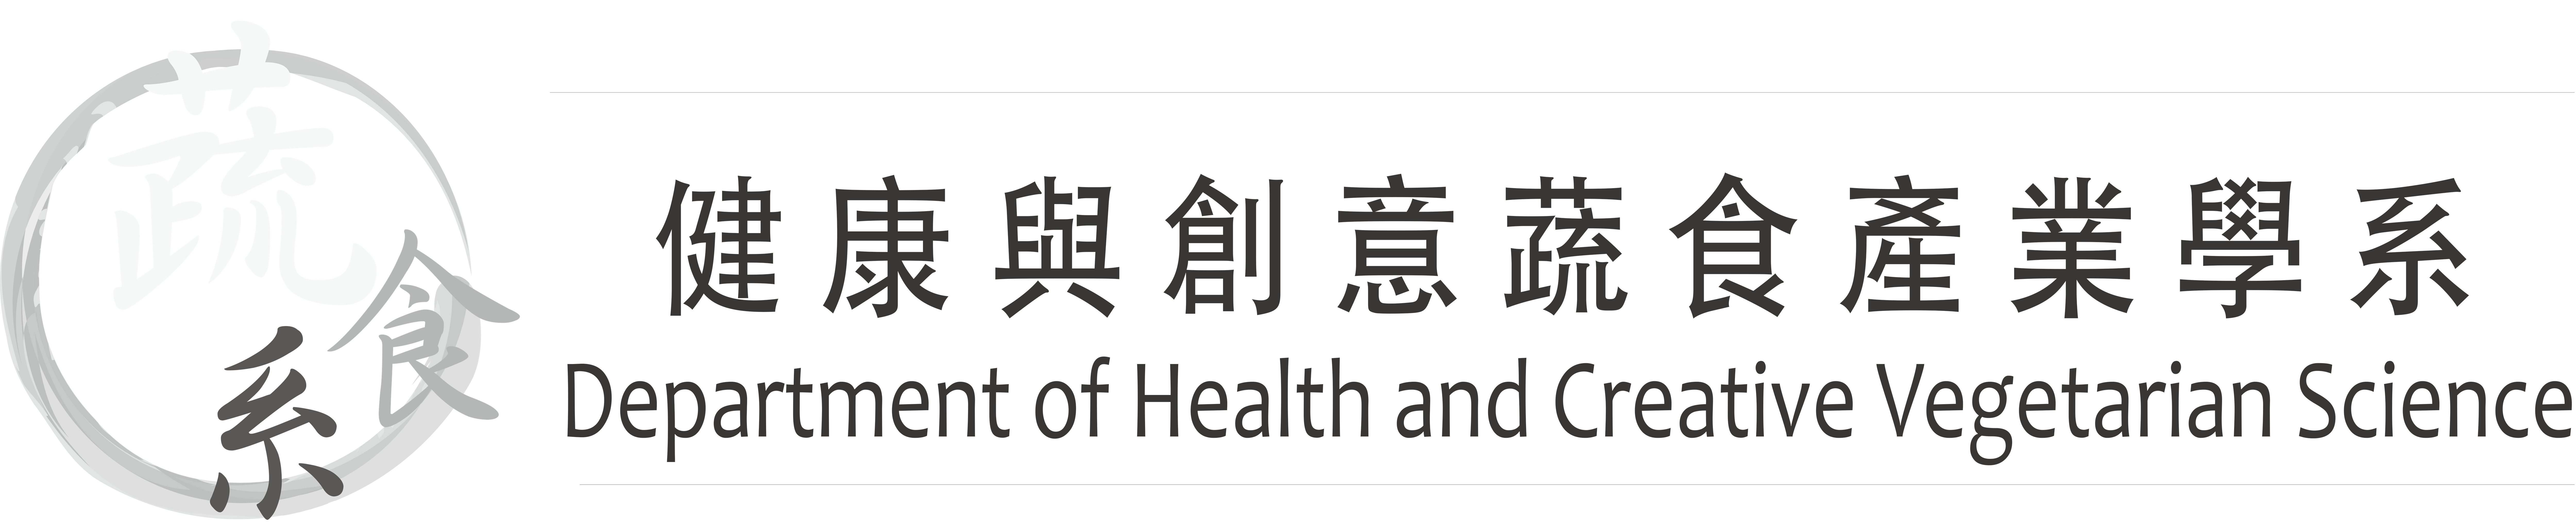 佛光大学 健康与创意蔬食产业学系的Logo